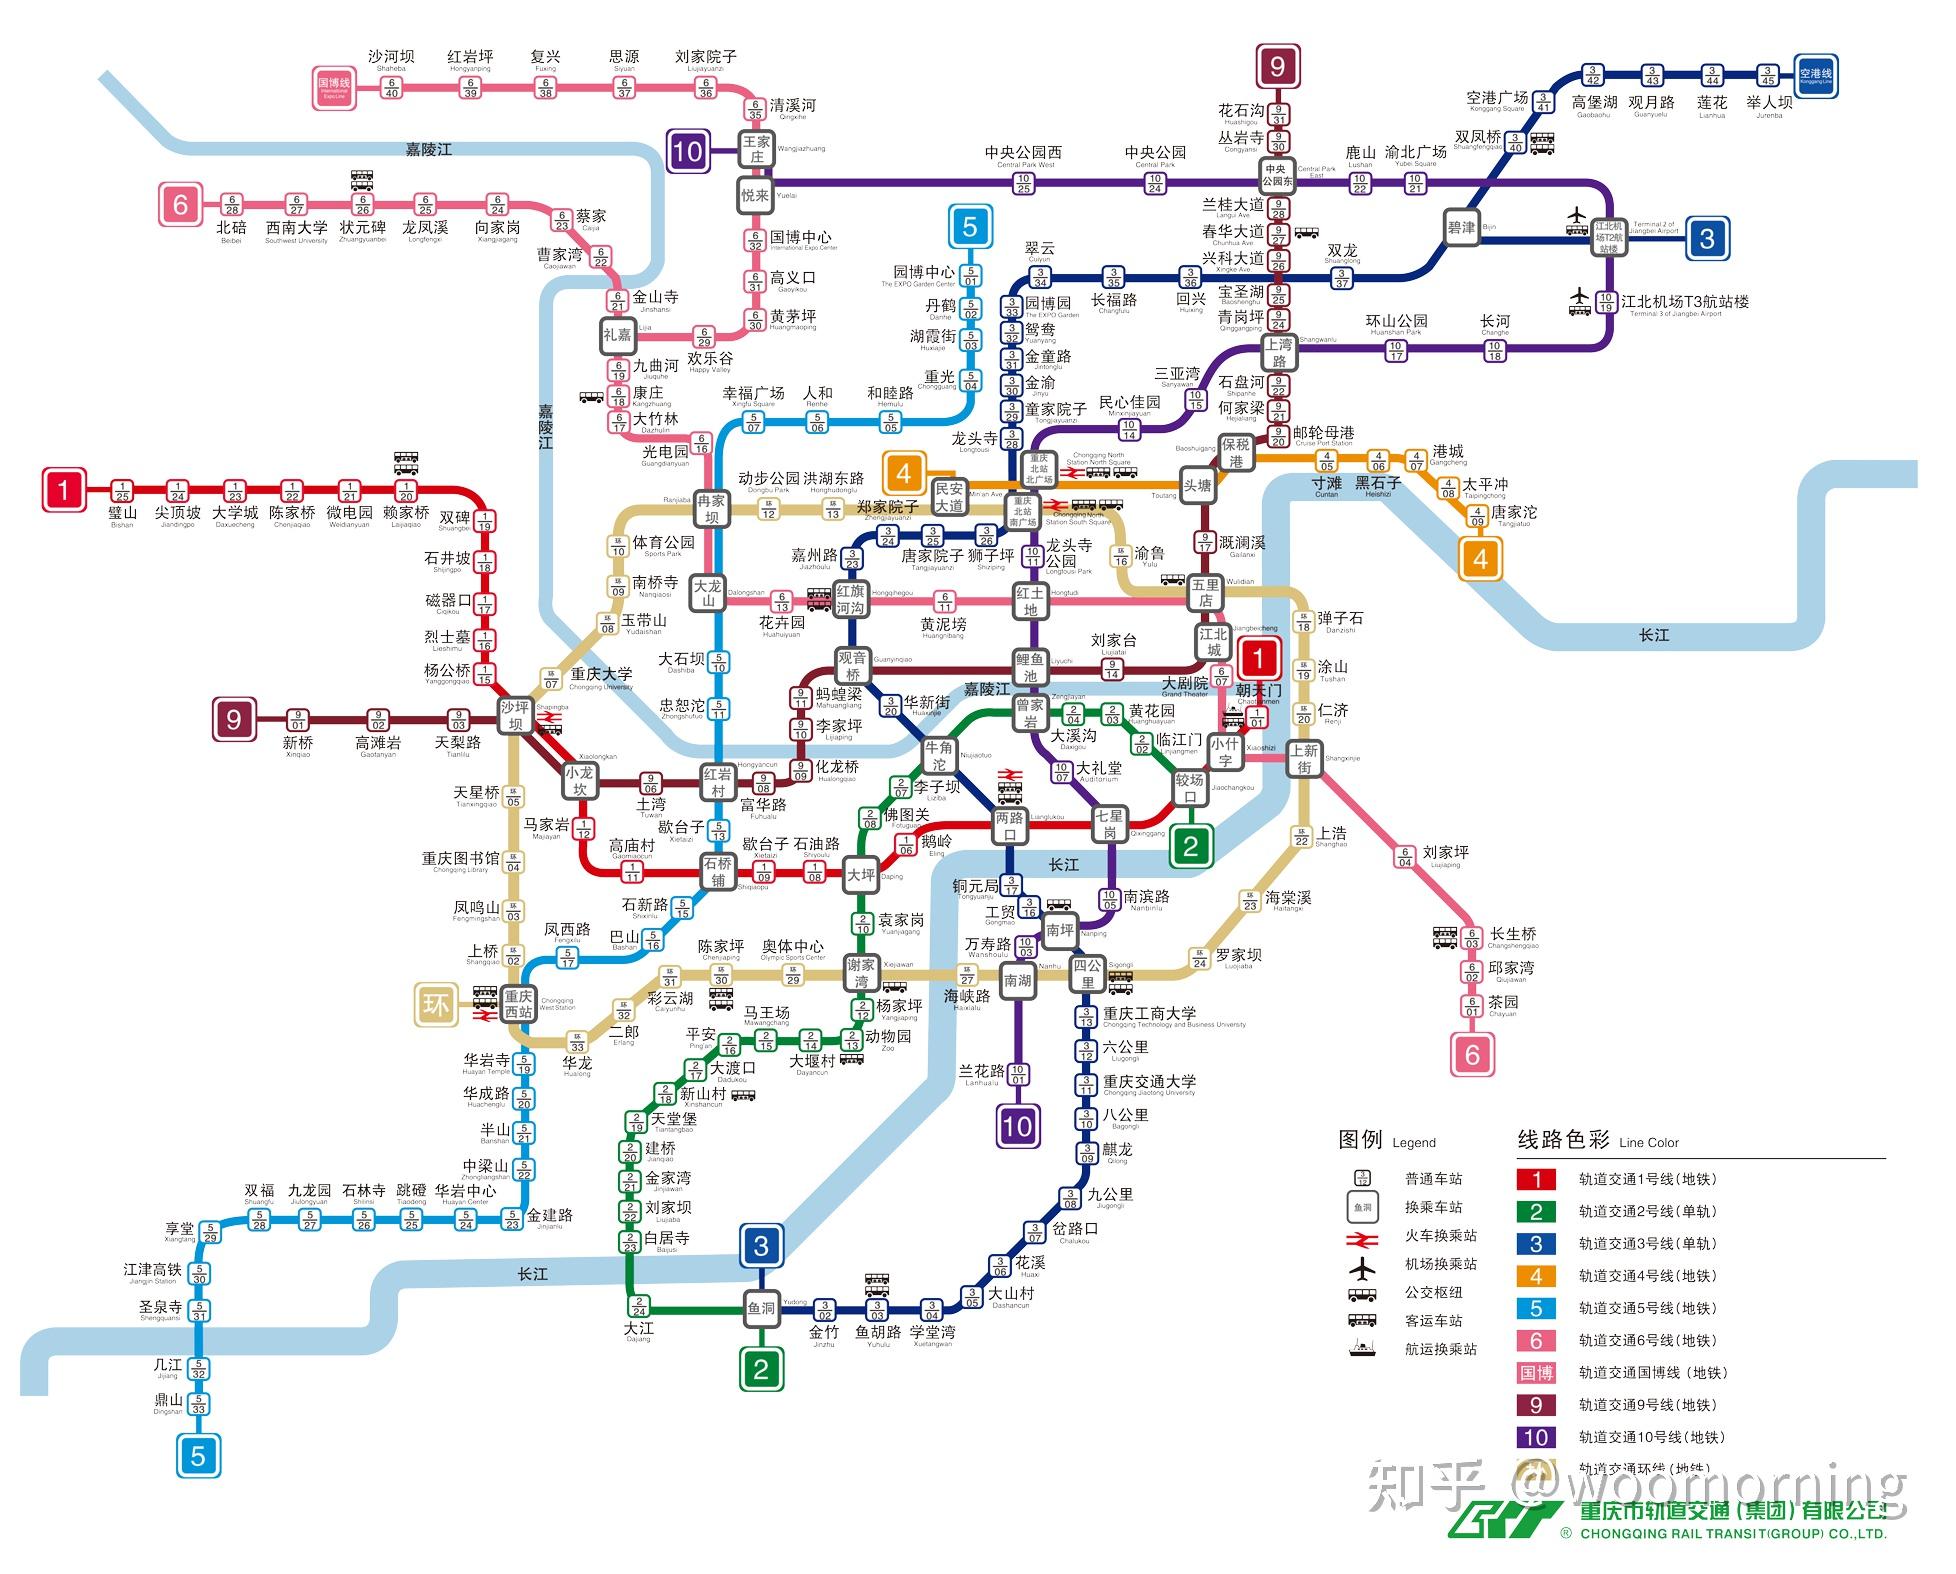 首先,下图是是在重庆市轨道交通官网下载的最新已经通车的轨道交通